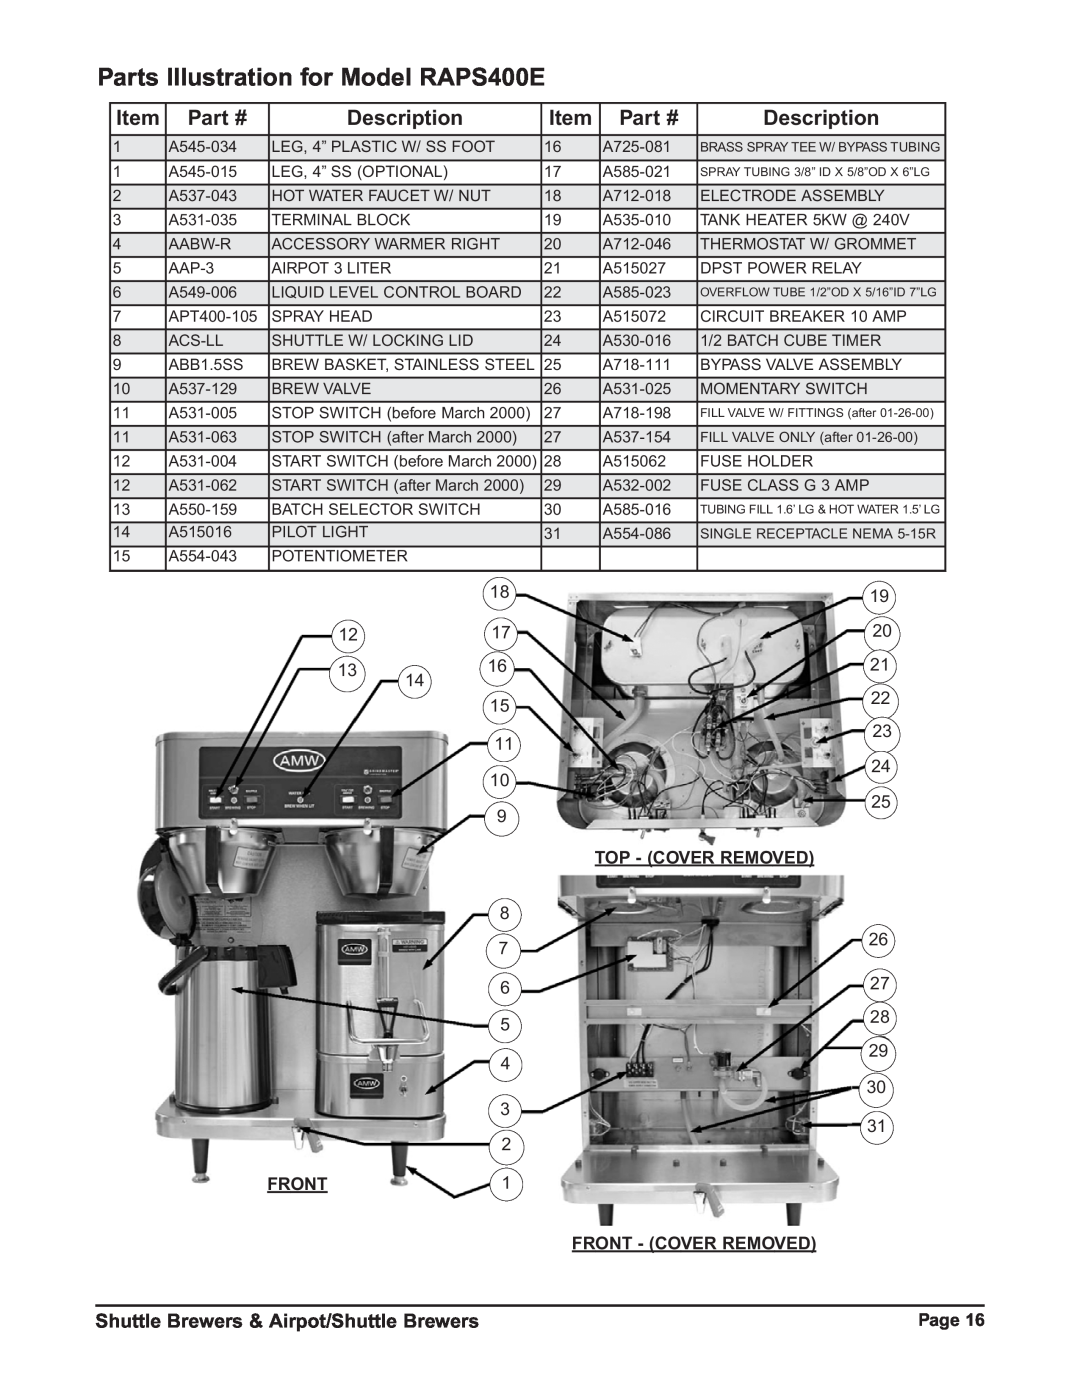 Grindmaster RAP400E Parts Illustration for Model RAPS400E, Description, Shuttle Brewers & Airpot/Shuttle Brewers, Page 